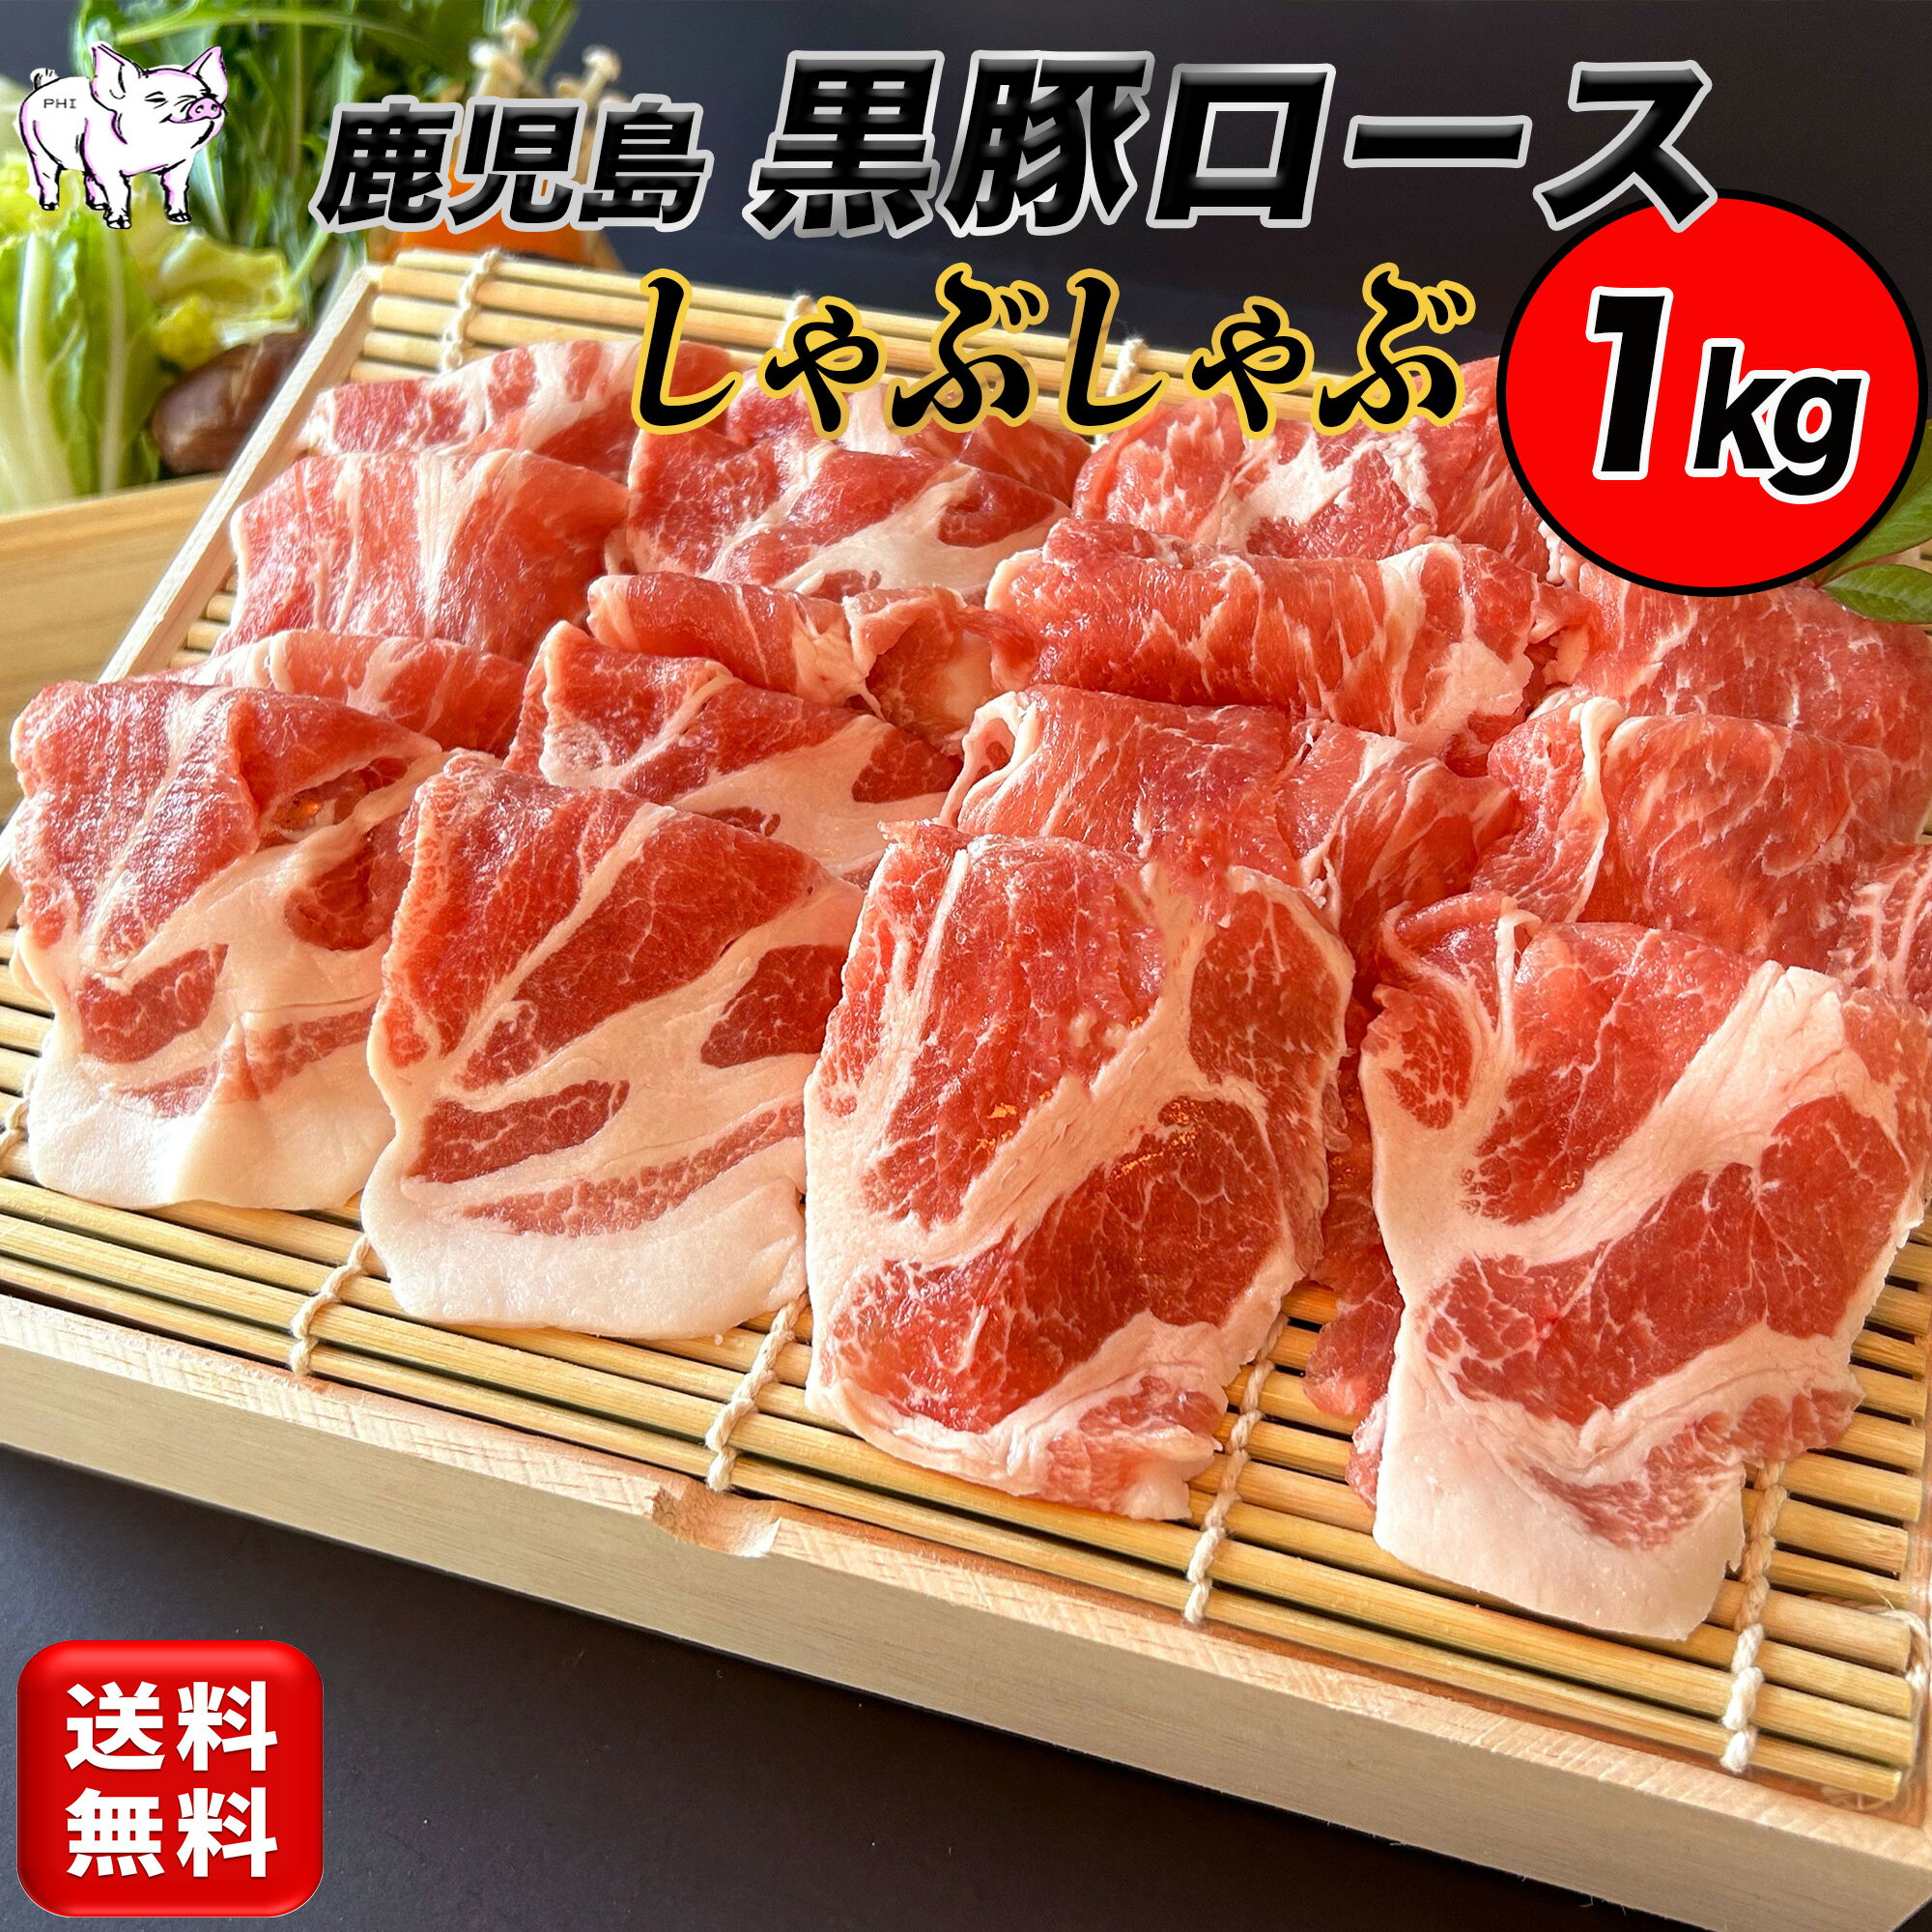 黒豚の中でも特に美味しいとされている「かごしま黒豚」の肩ロース肉しゃぶしゃぶ用1kg（5〜6人前）です。かごしま豚肉は過去に食肉市場において牛肉並みの値がついたほど別格とされています。筋繊維が細いので、柔らかく、旨味が多いのが特徴です。酸化を防ぐためフィルム包装しています。商品受け取り後は速やかに冷凍庫に保管してください。賞味期限：冷凍保管で製造日より12ヶ月